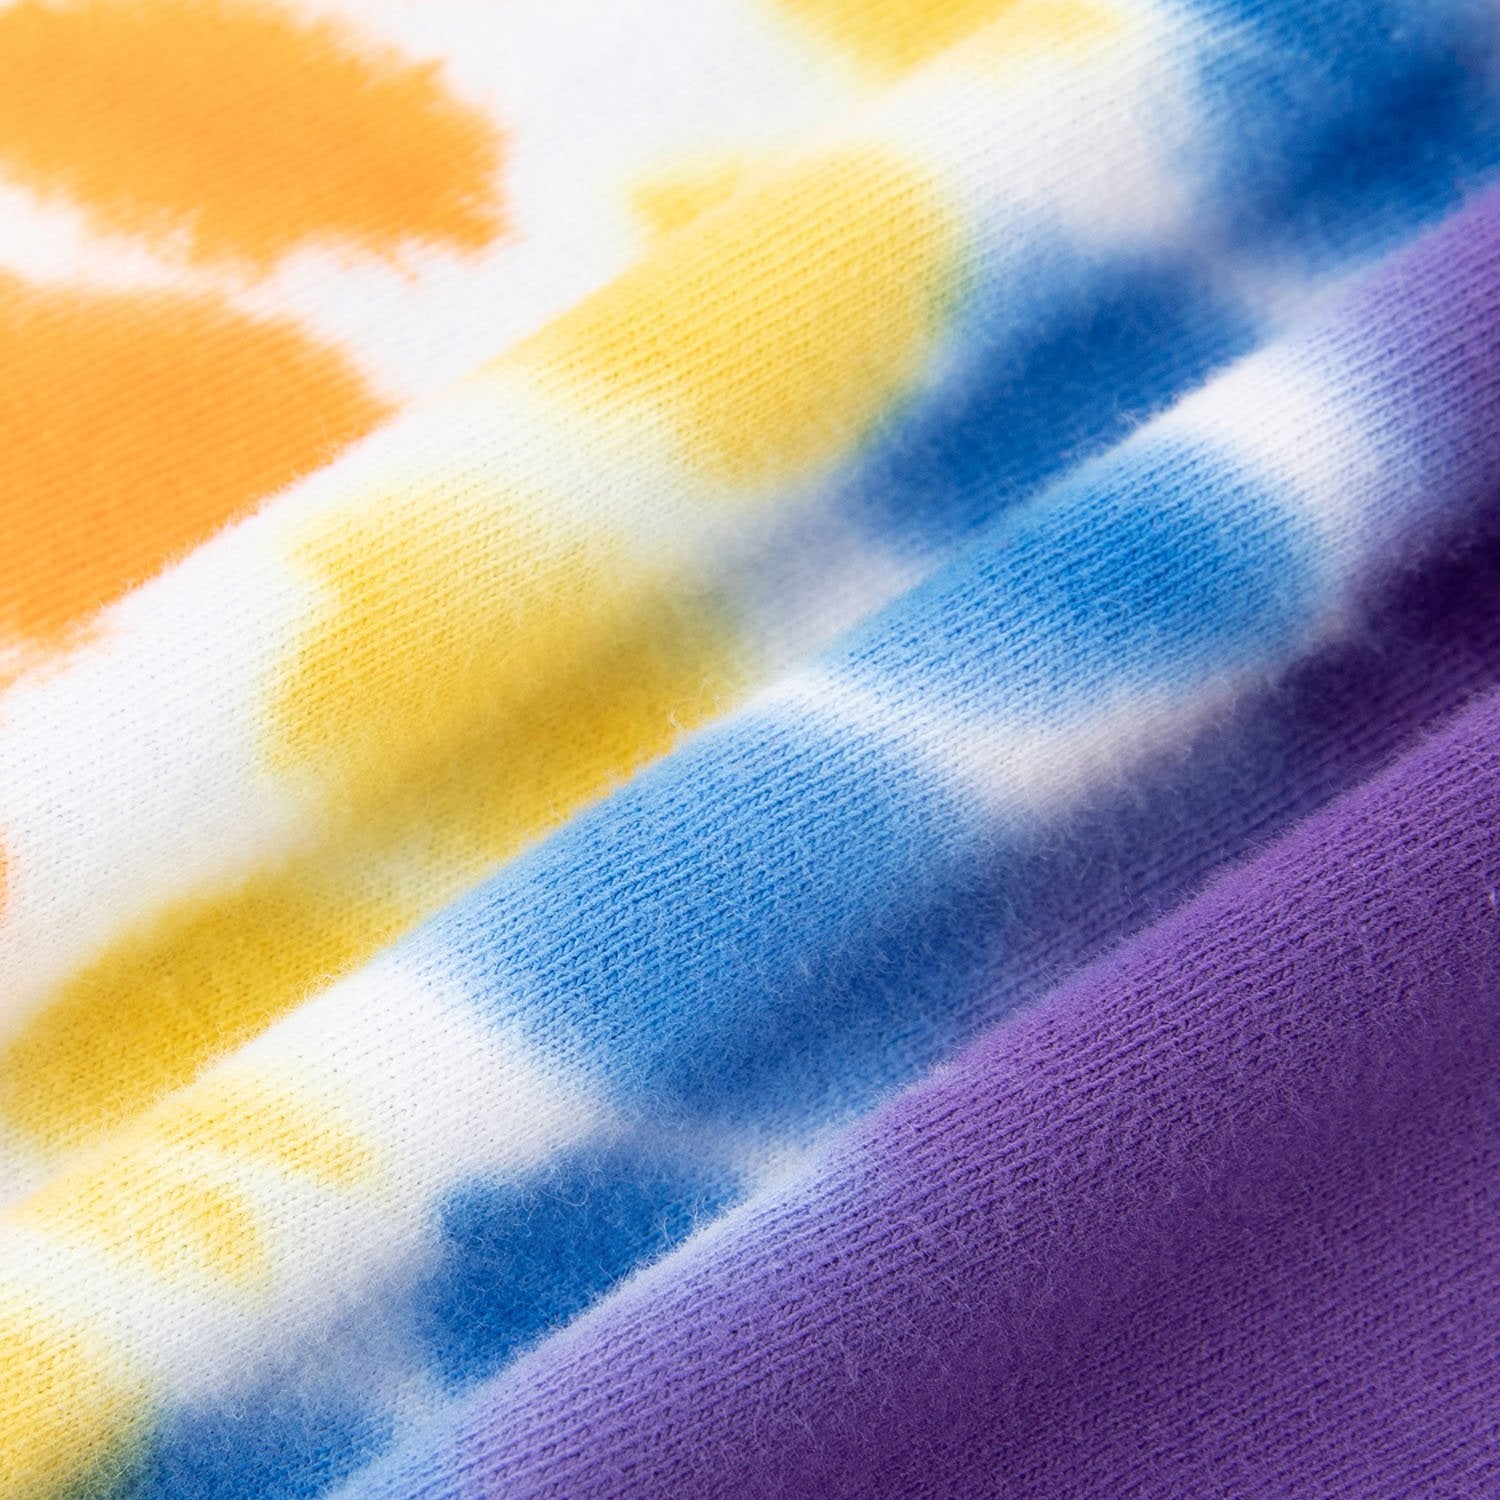 T-shirt à manches courtes avec étiquette de direction de couleur contrastante Justnotag Tie-Dye